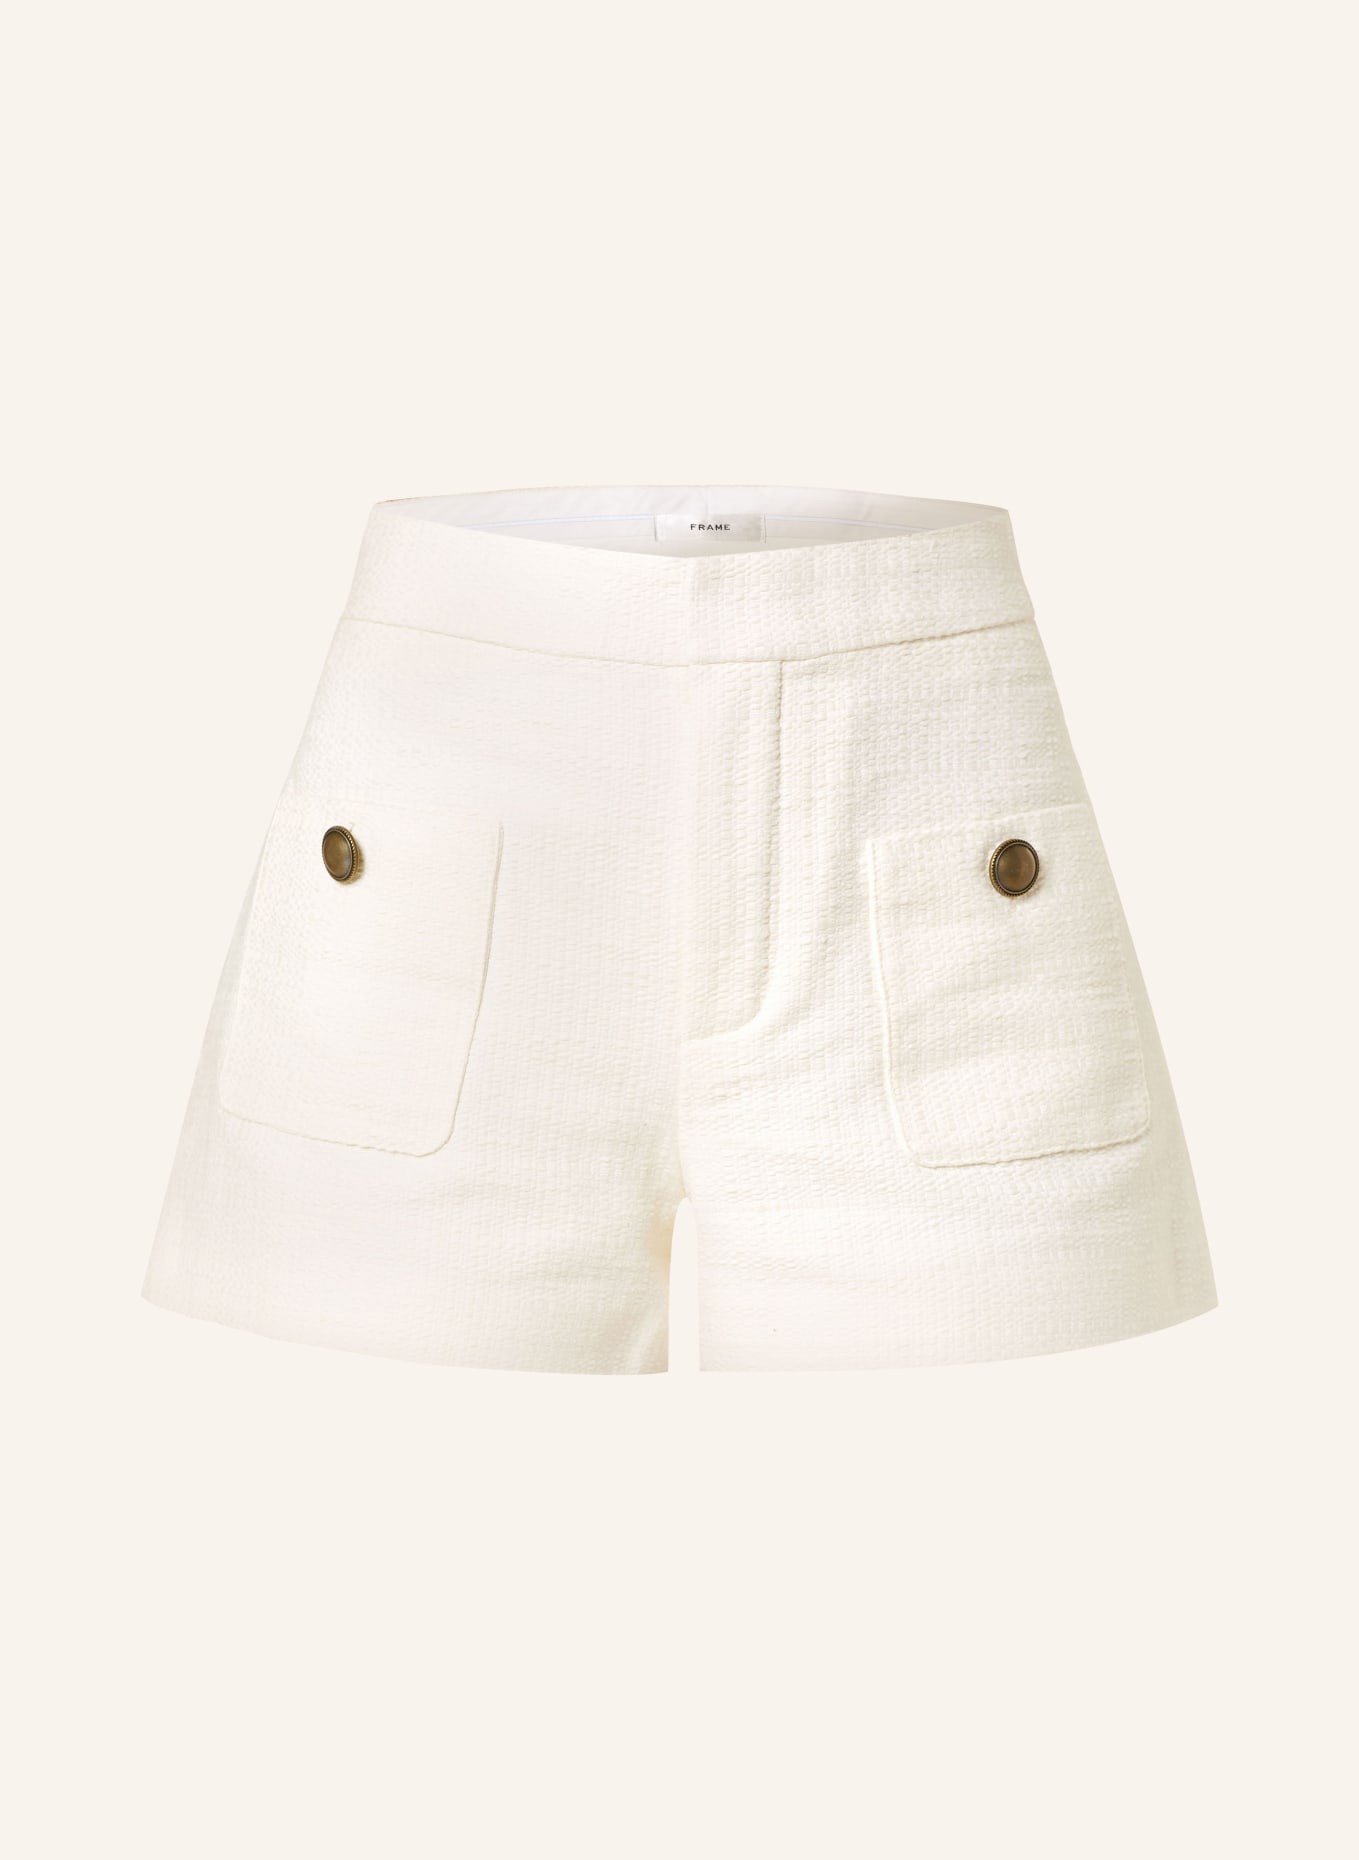 FRAME Tweed shorts, Color: ECRU (Image 1)